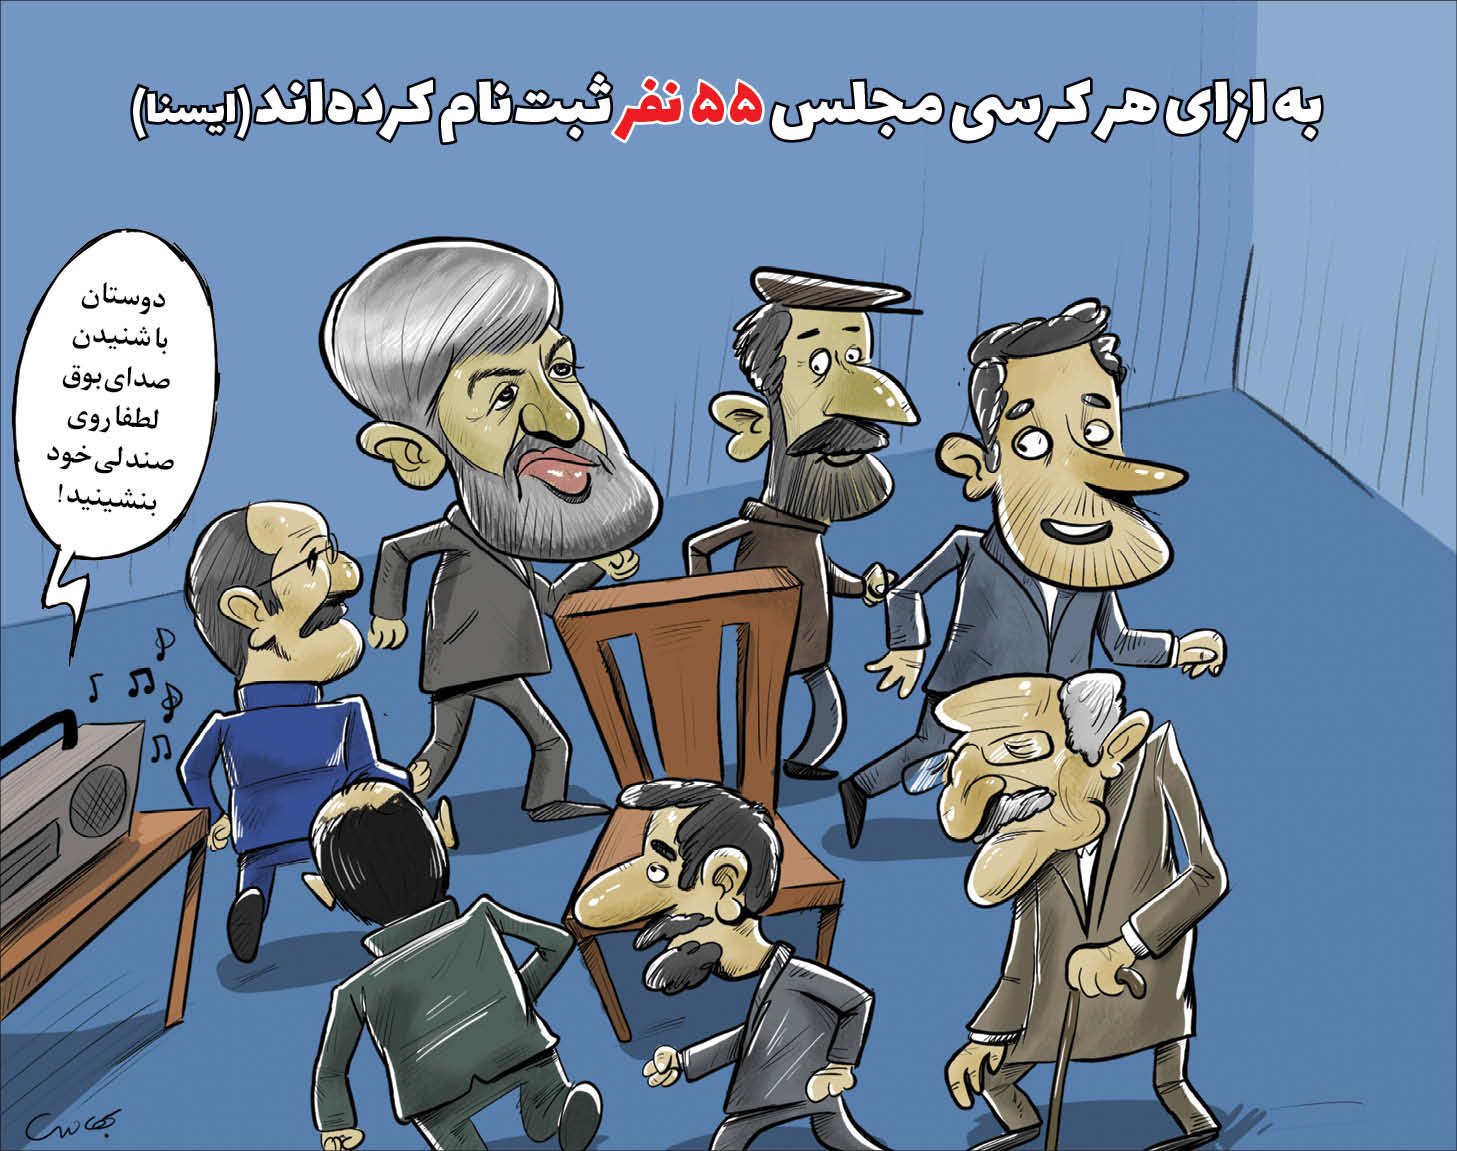 کارتونیست: محمد بهادری